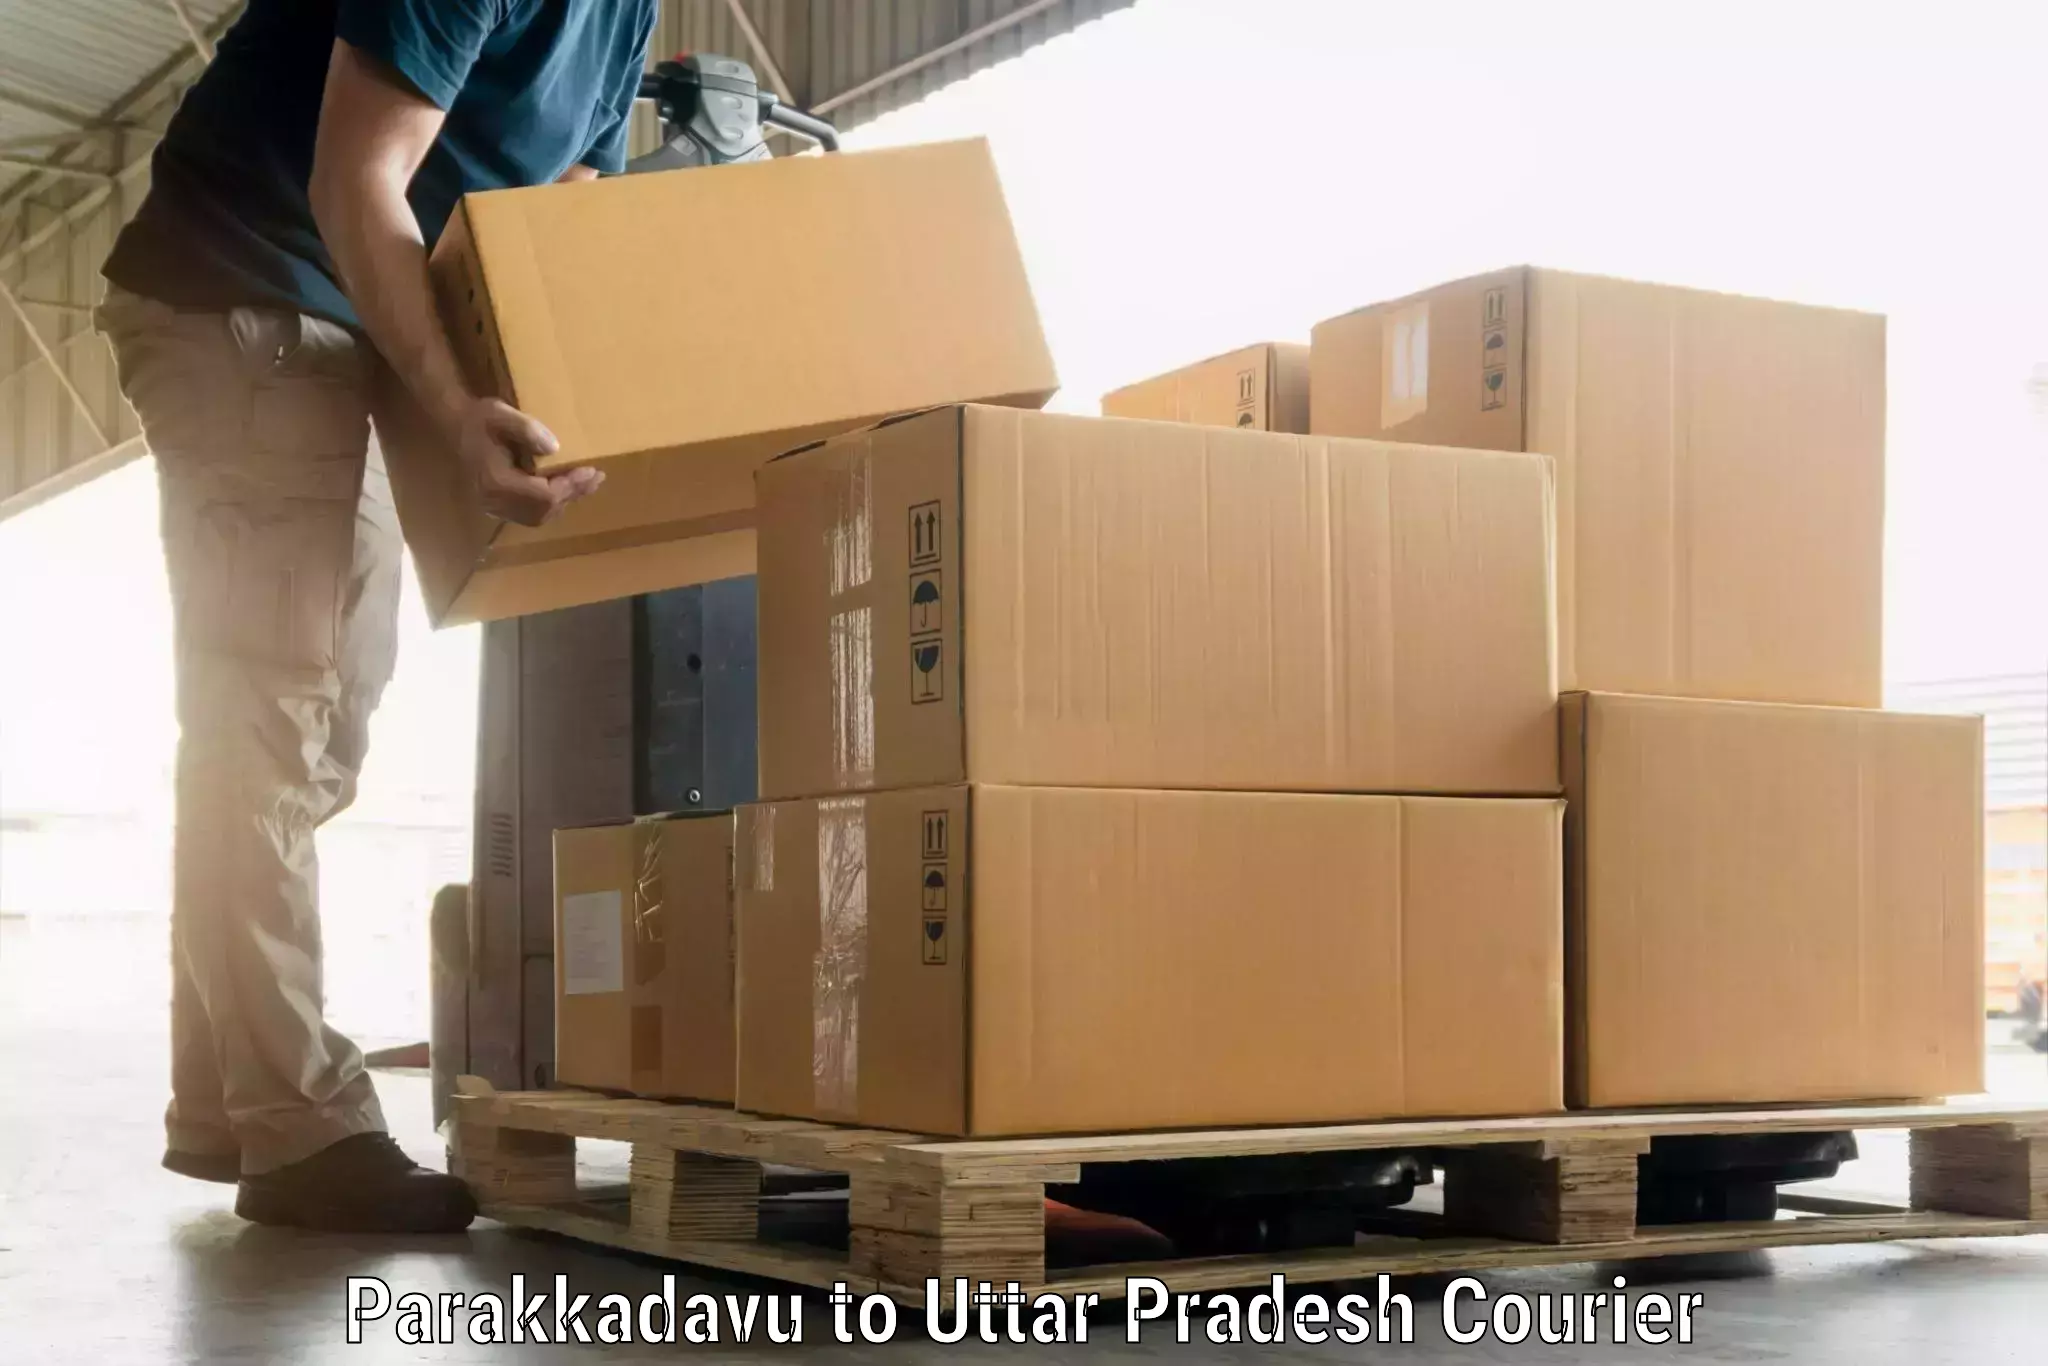 Baggage shipping experience Parakkadavu to Lucknow